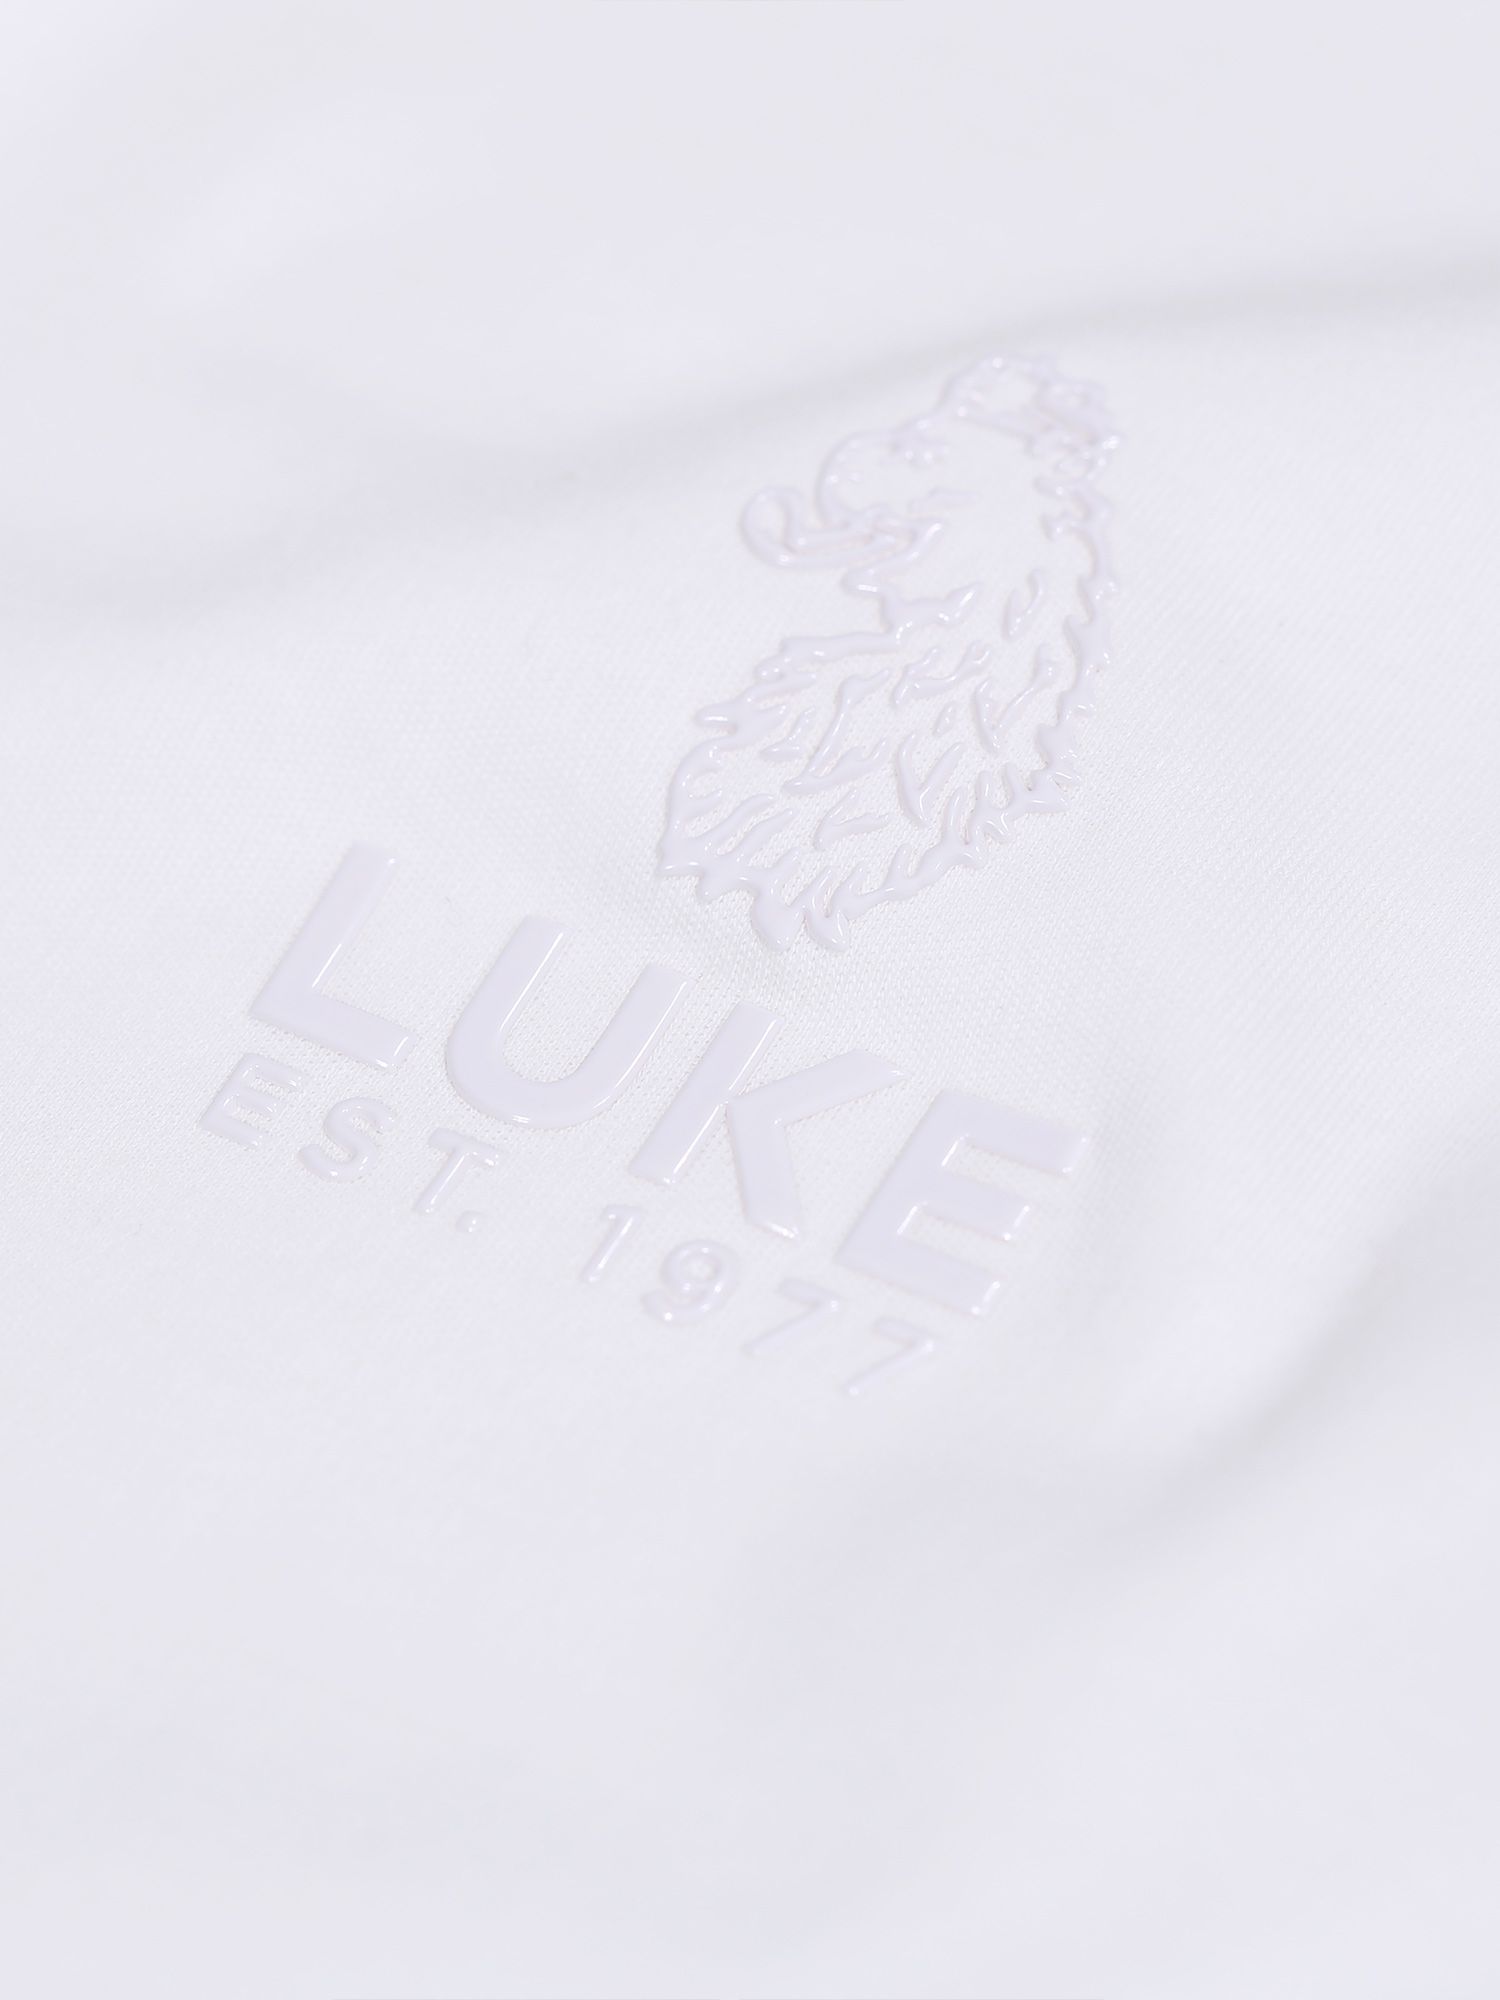 LUKE 1977 Center Fold T-Shirt, White, S